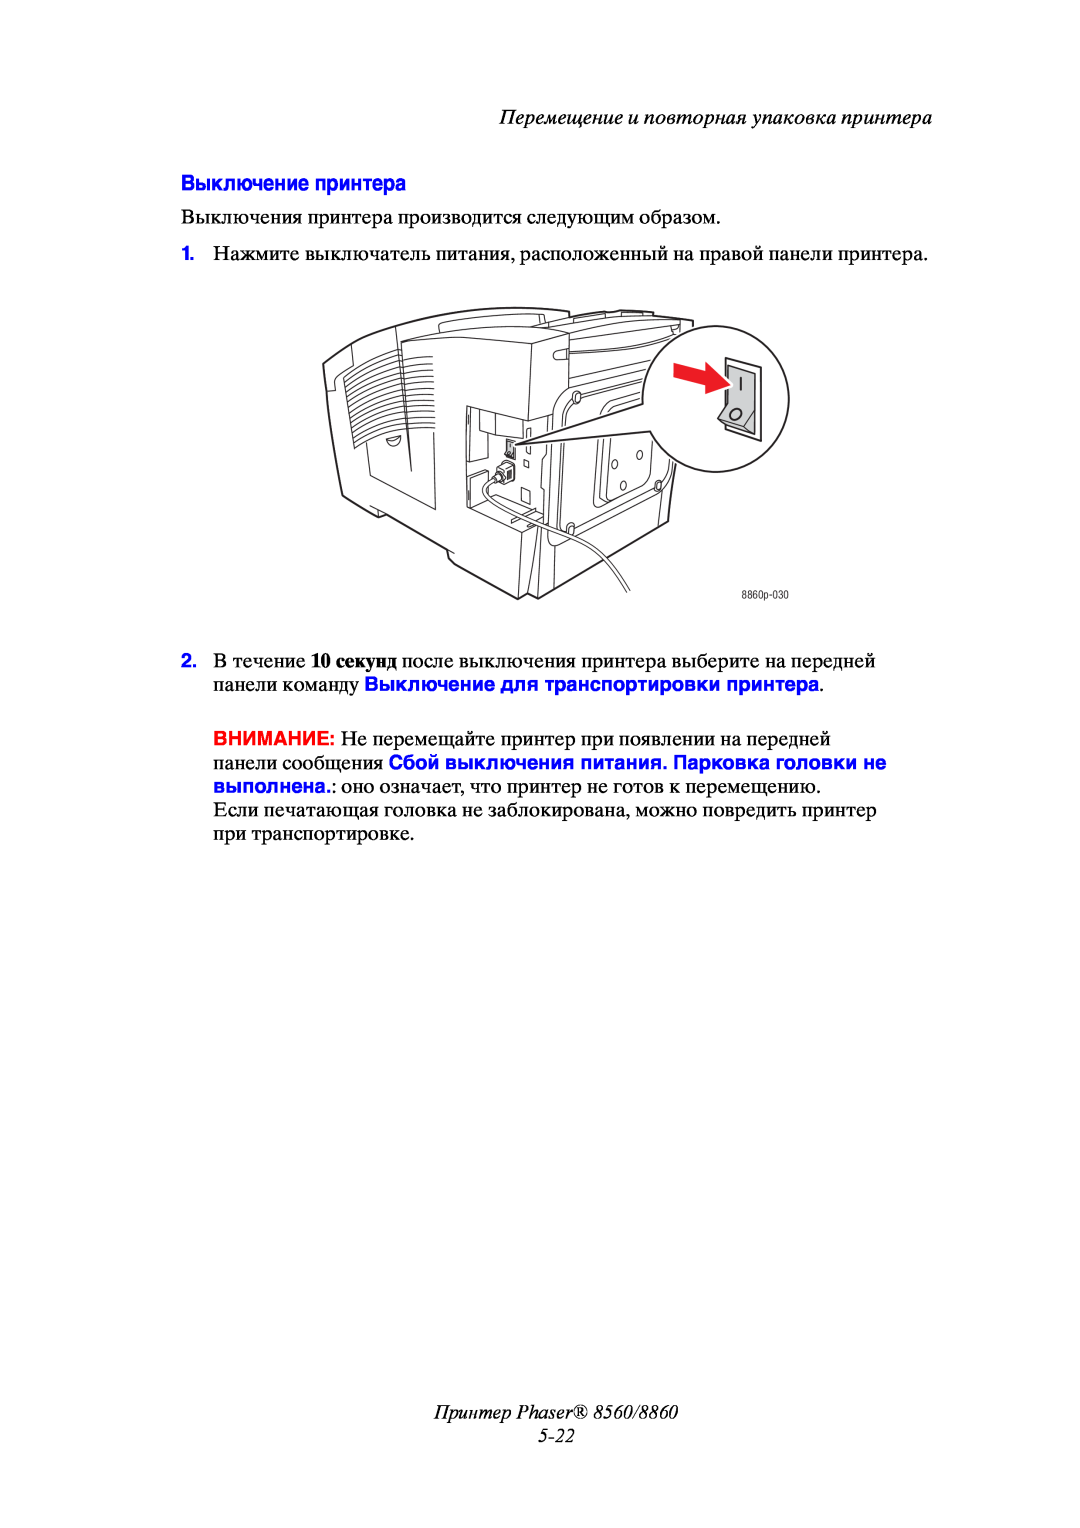 Xerox manual Выключение принтера, Принтер Phaser 8560/8860 5-22, Перемещение и повторная упаковка принтера 